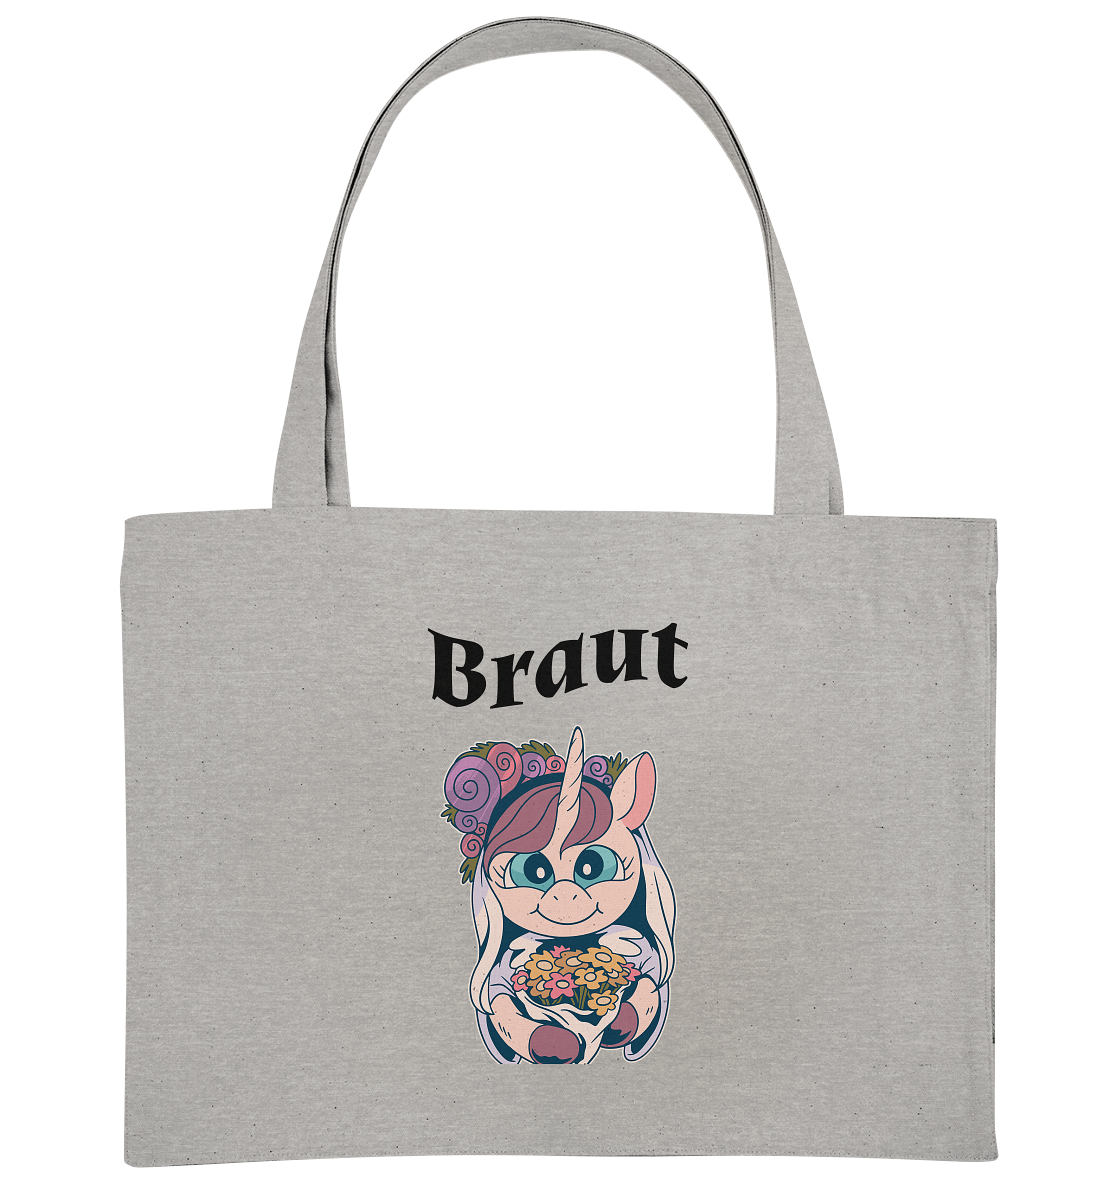 Junggesellinen Abschied Braut  - Organic Shopping-Bag